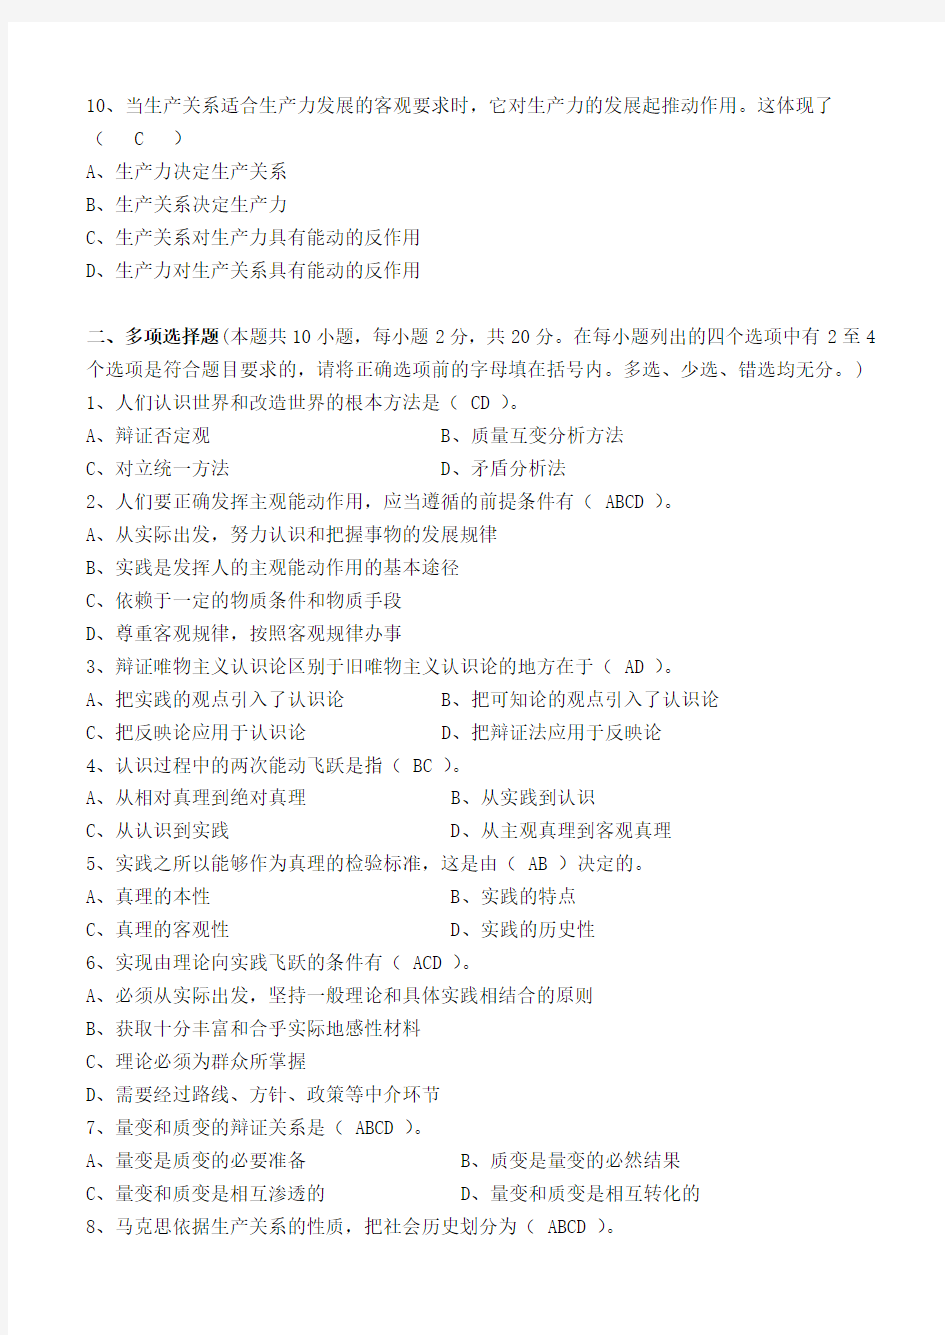 江南大学现代远程教育 马克思主义基本原理 201203工程管理专业专升本 2012年下半年第一阶段测试卷